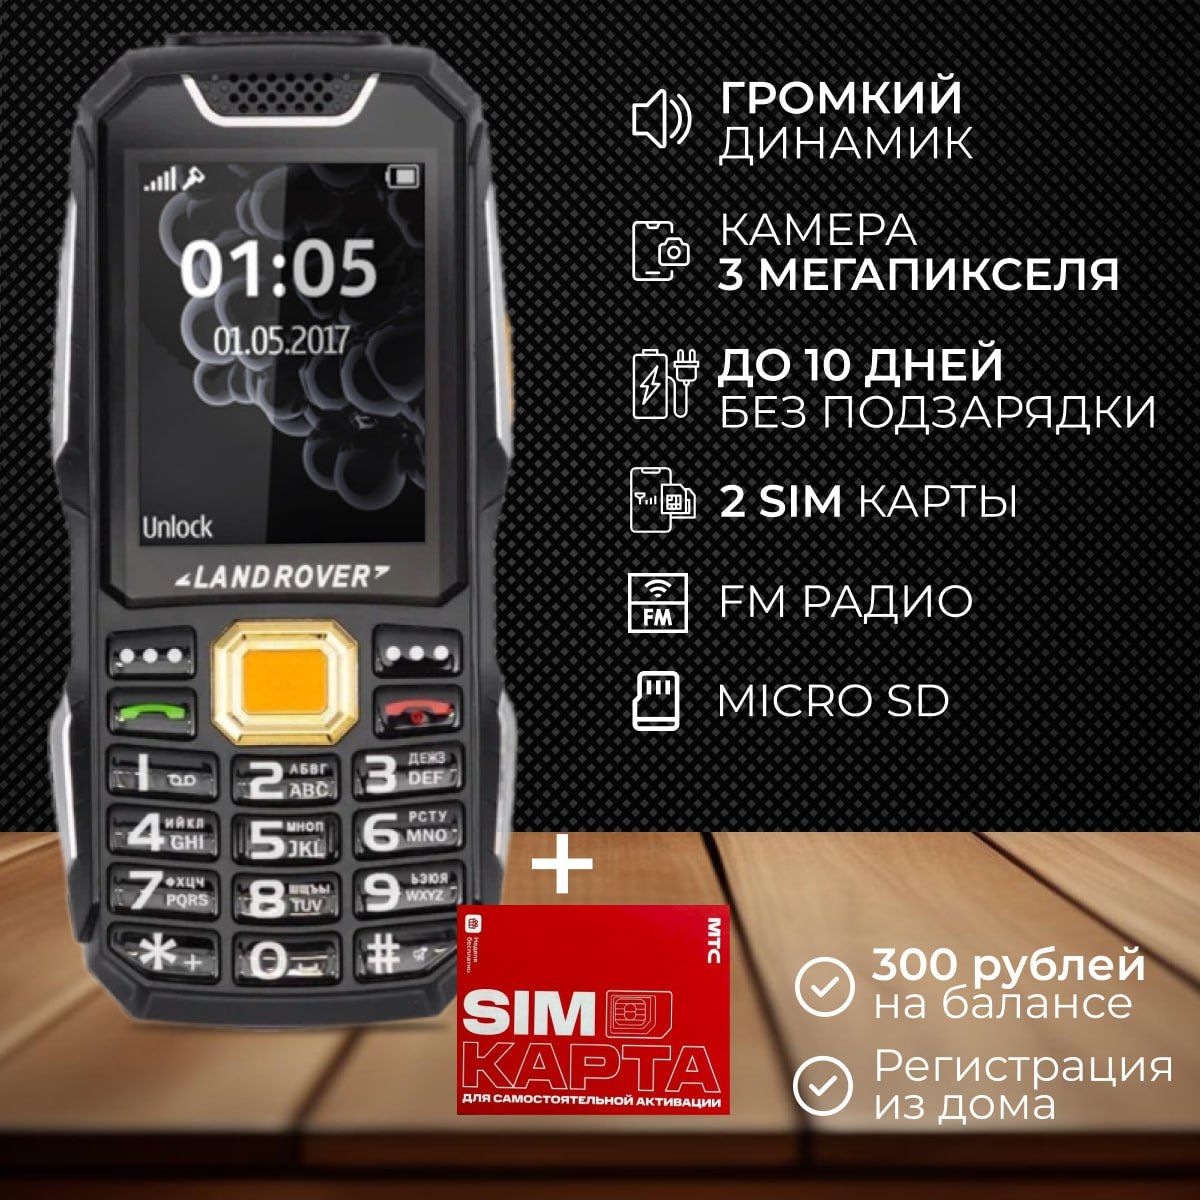 Мобильныйтелефонсим-картавподароккнопочныйскамерой2simкартыmicroSDкартапамятисфонарикомдляпожилыхлюдейдетскийтелефон